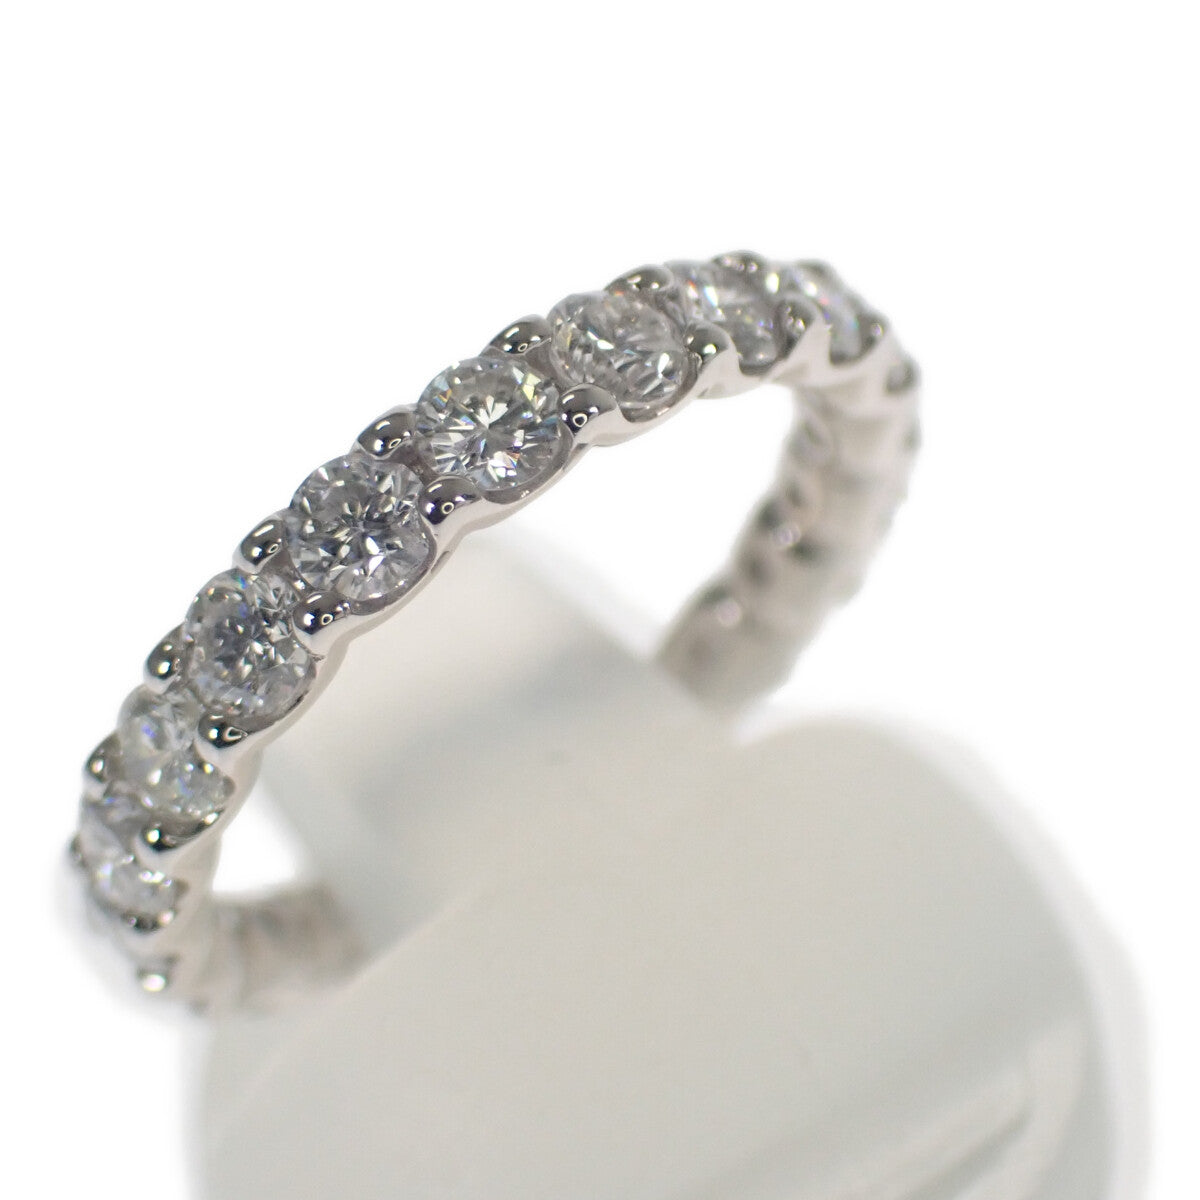 Ladies' Pt900 Platinum Three-Quarters Eternity Design Diamond Ring (1.51ct) – Size 11, Silver Tone, Preowned